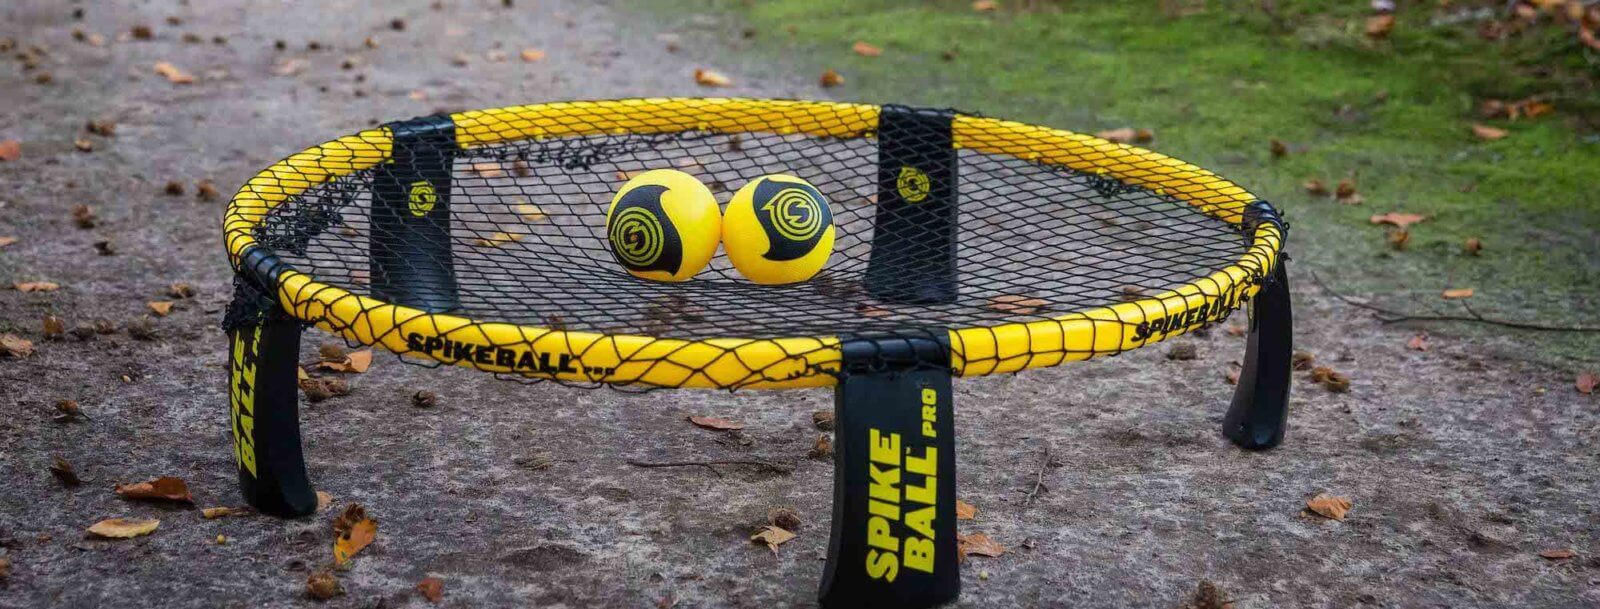 Spikeball Set - die Spielregeln in 30 Sekunden